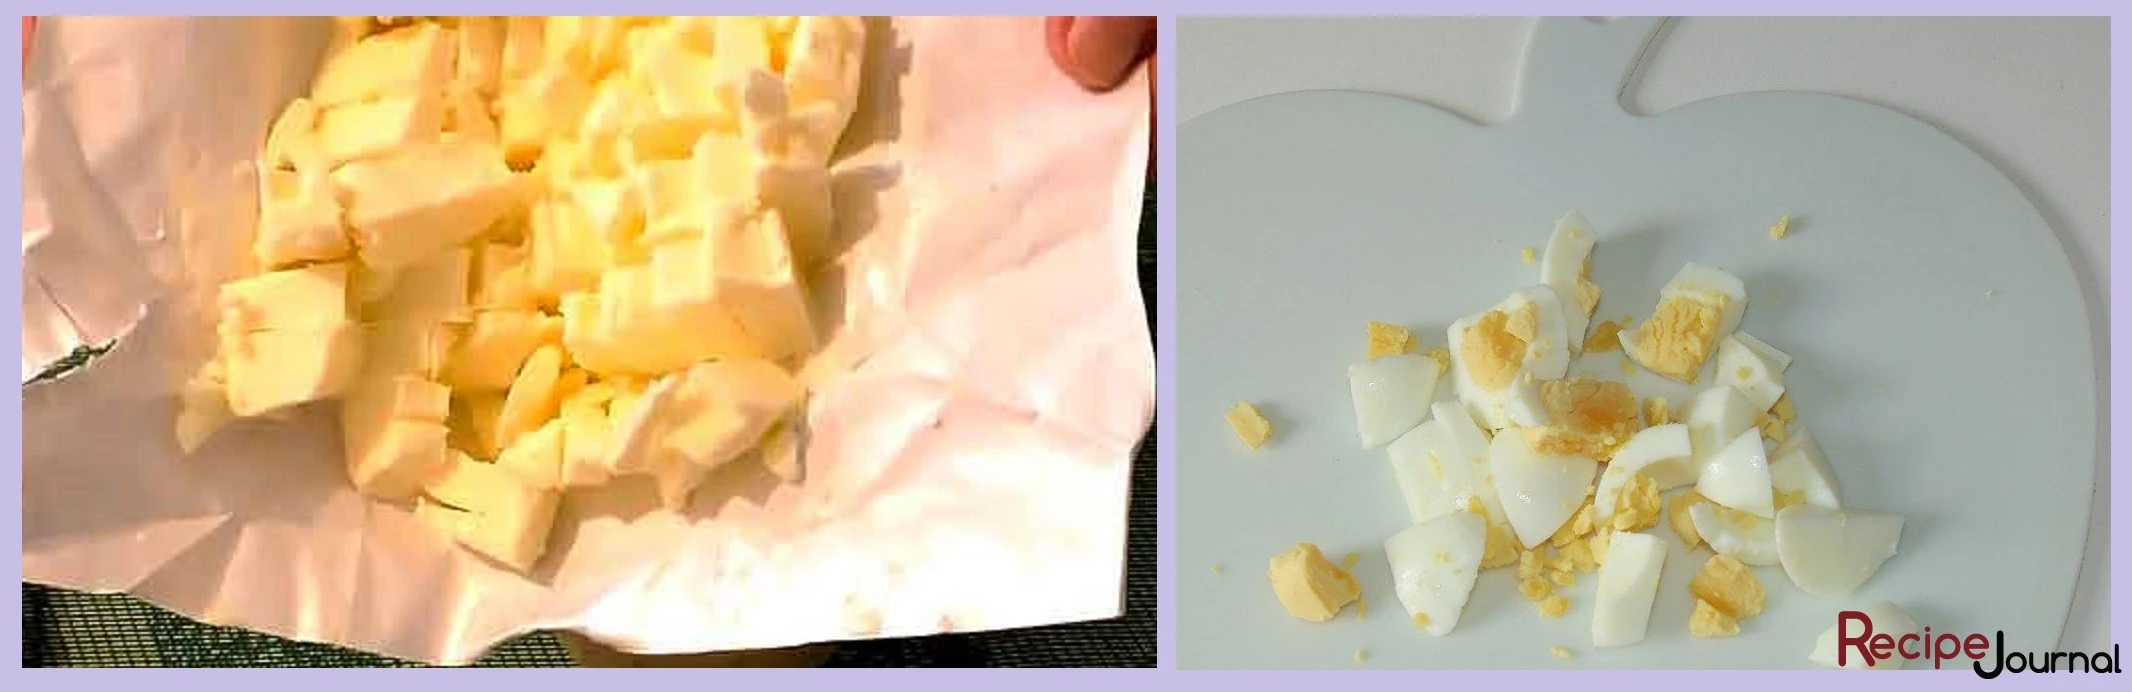 Масло надо достать заранее так же, как и отварить яйца. Размягченное масло порезать кубиком, отварные яйца почистить и так же порезать.